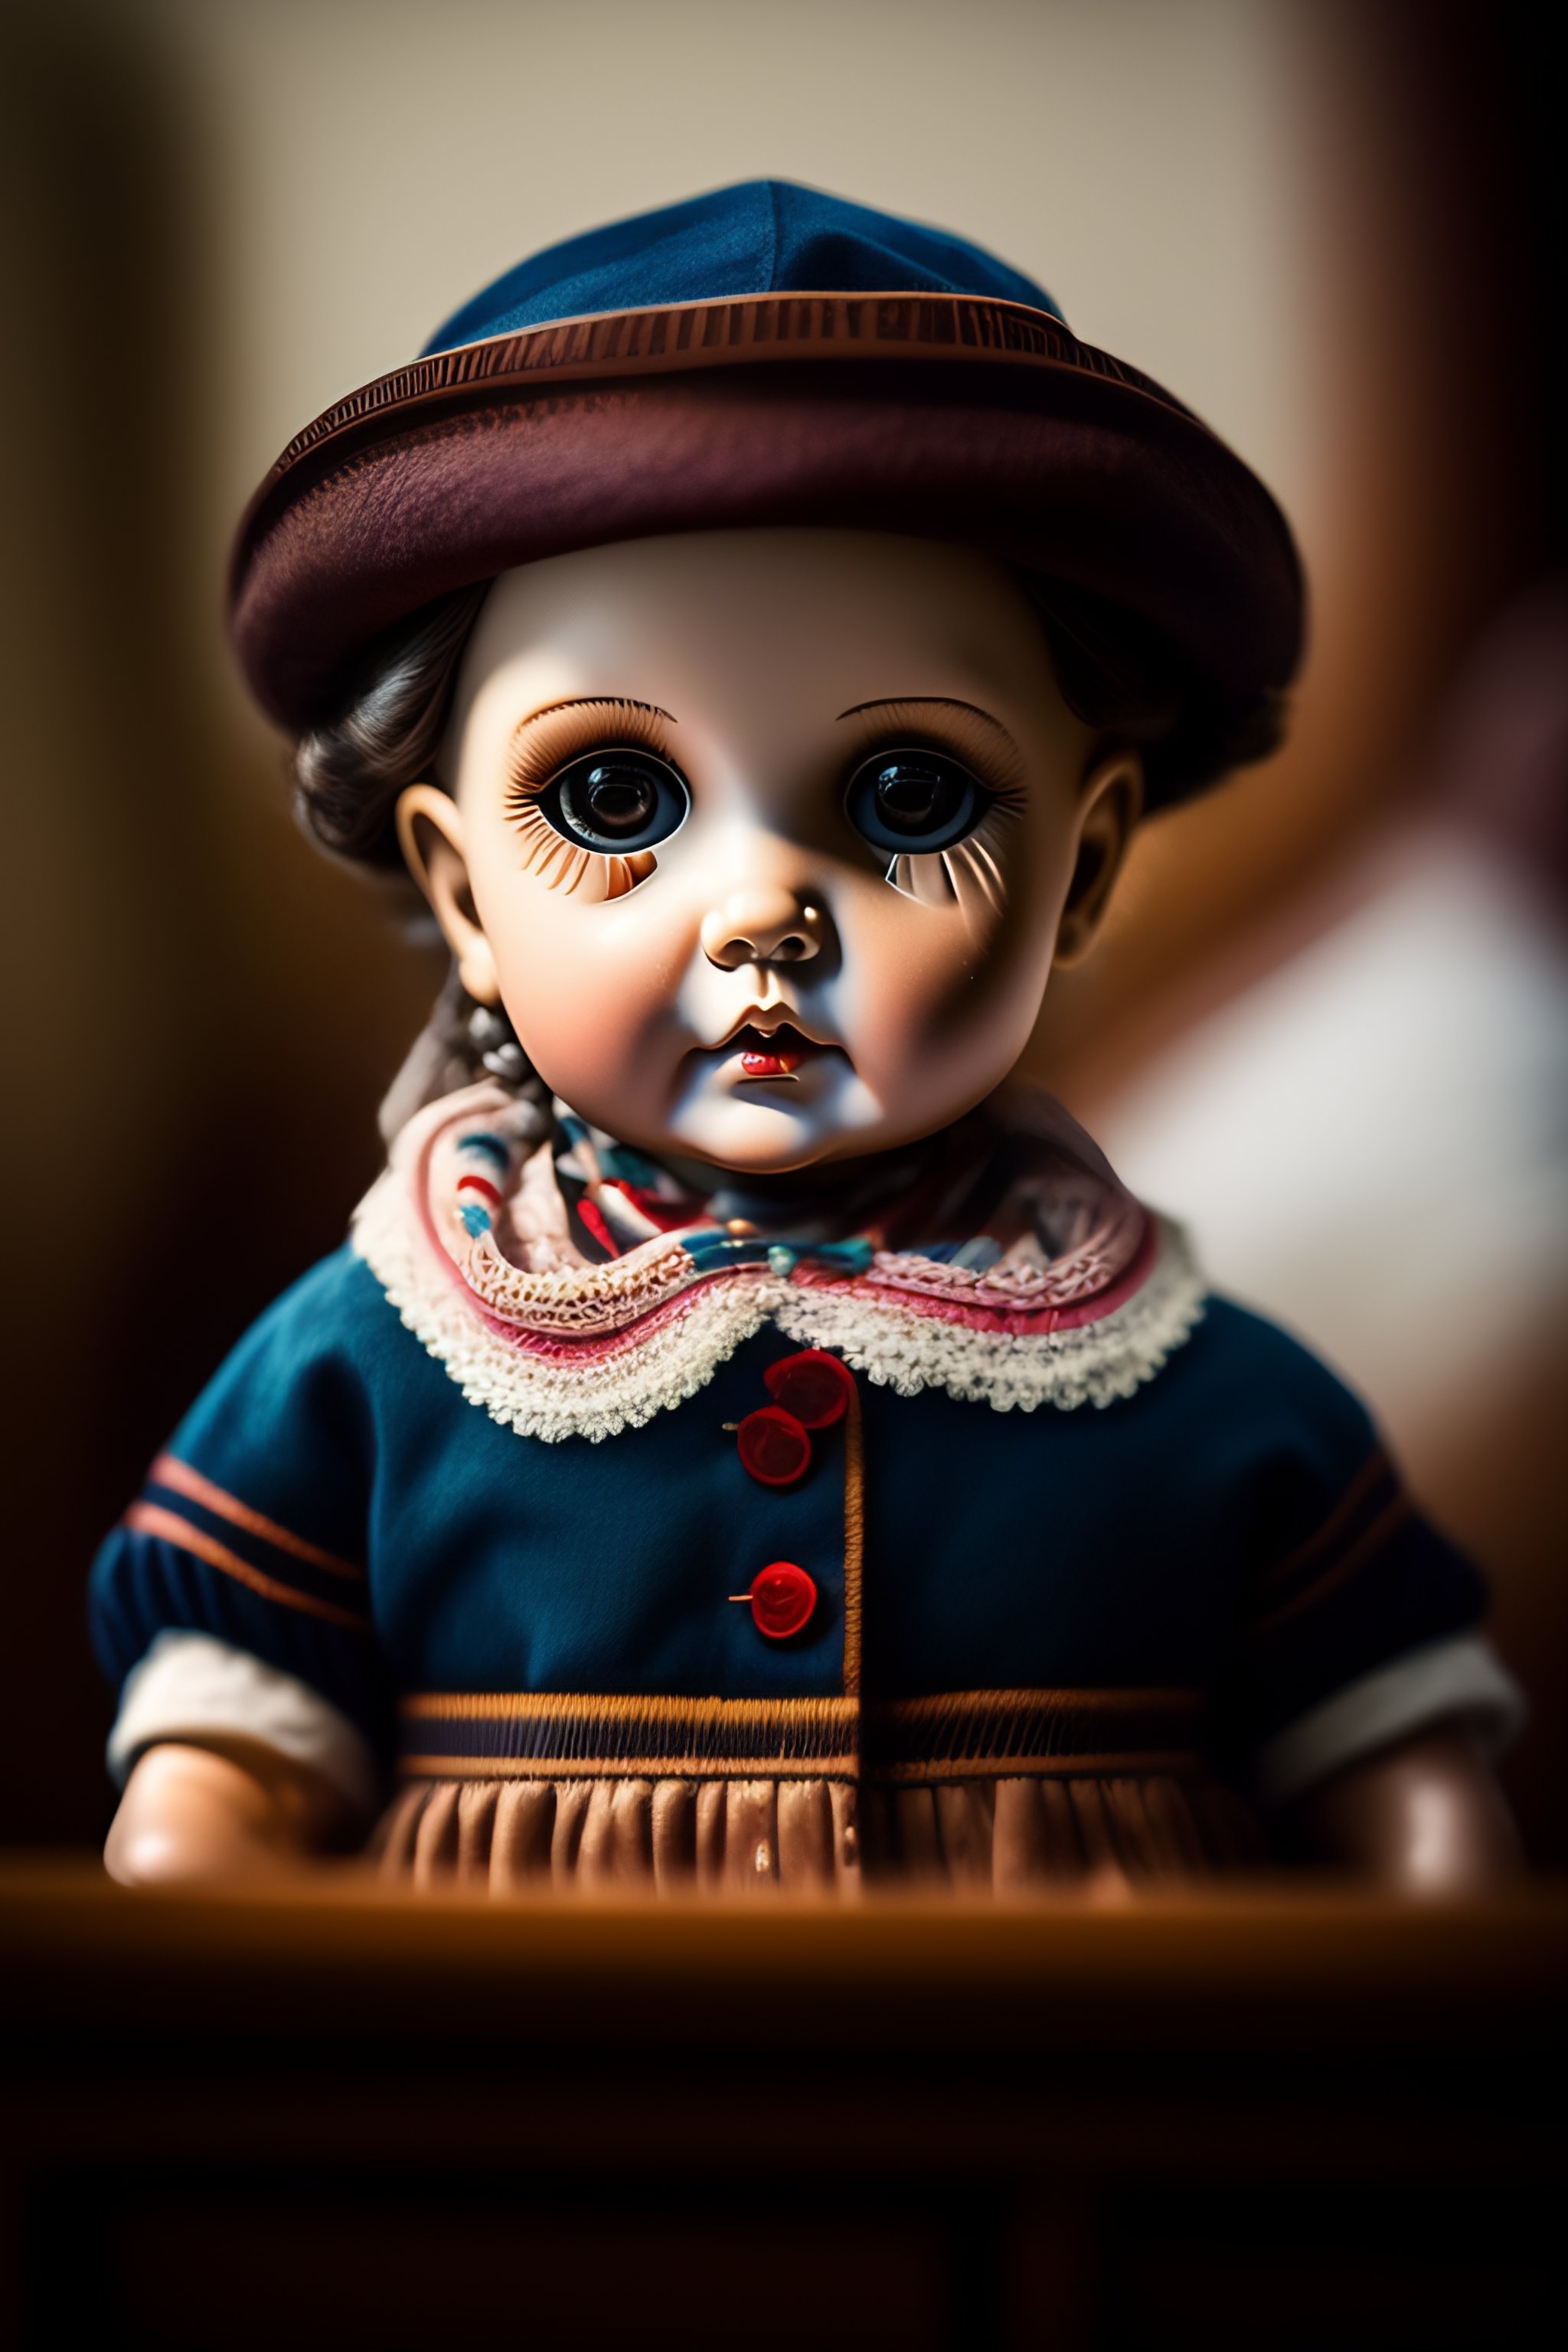 Lexica - Creepy doll